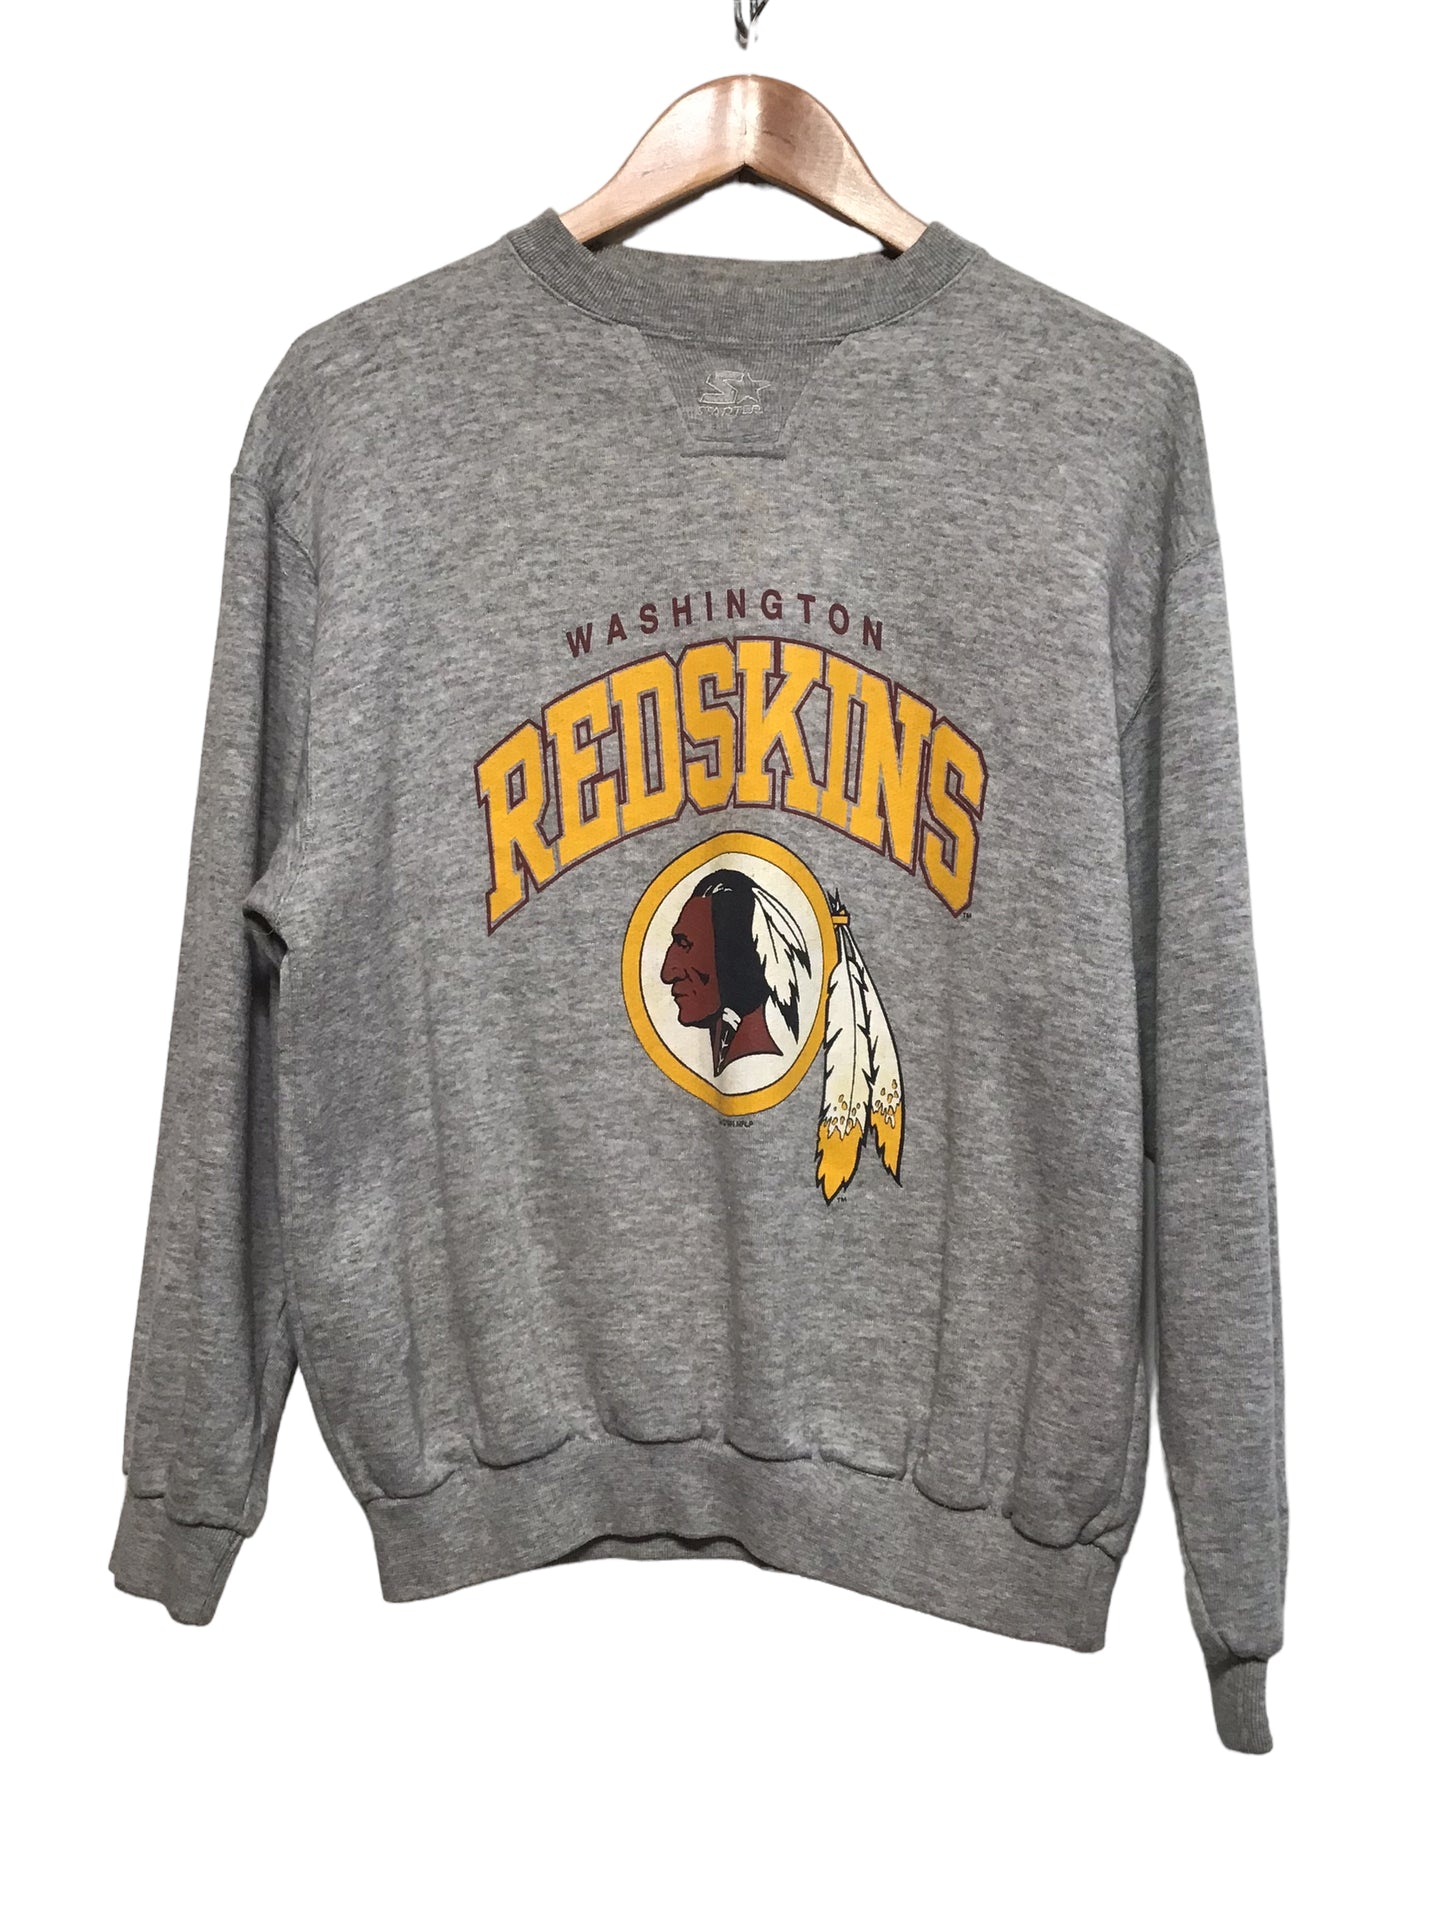 Redskins Sweatshirt (Size XL)